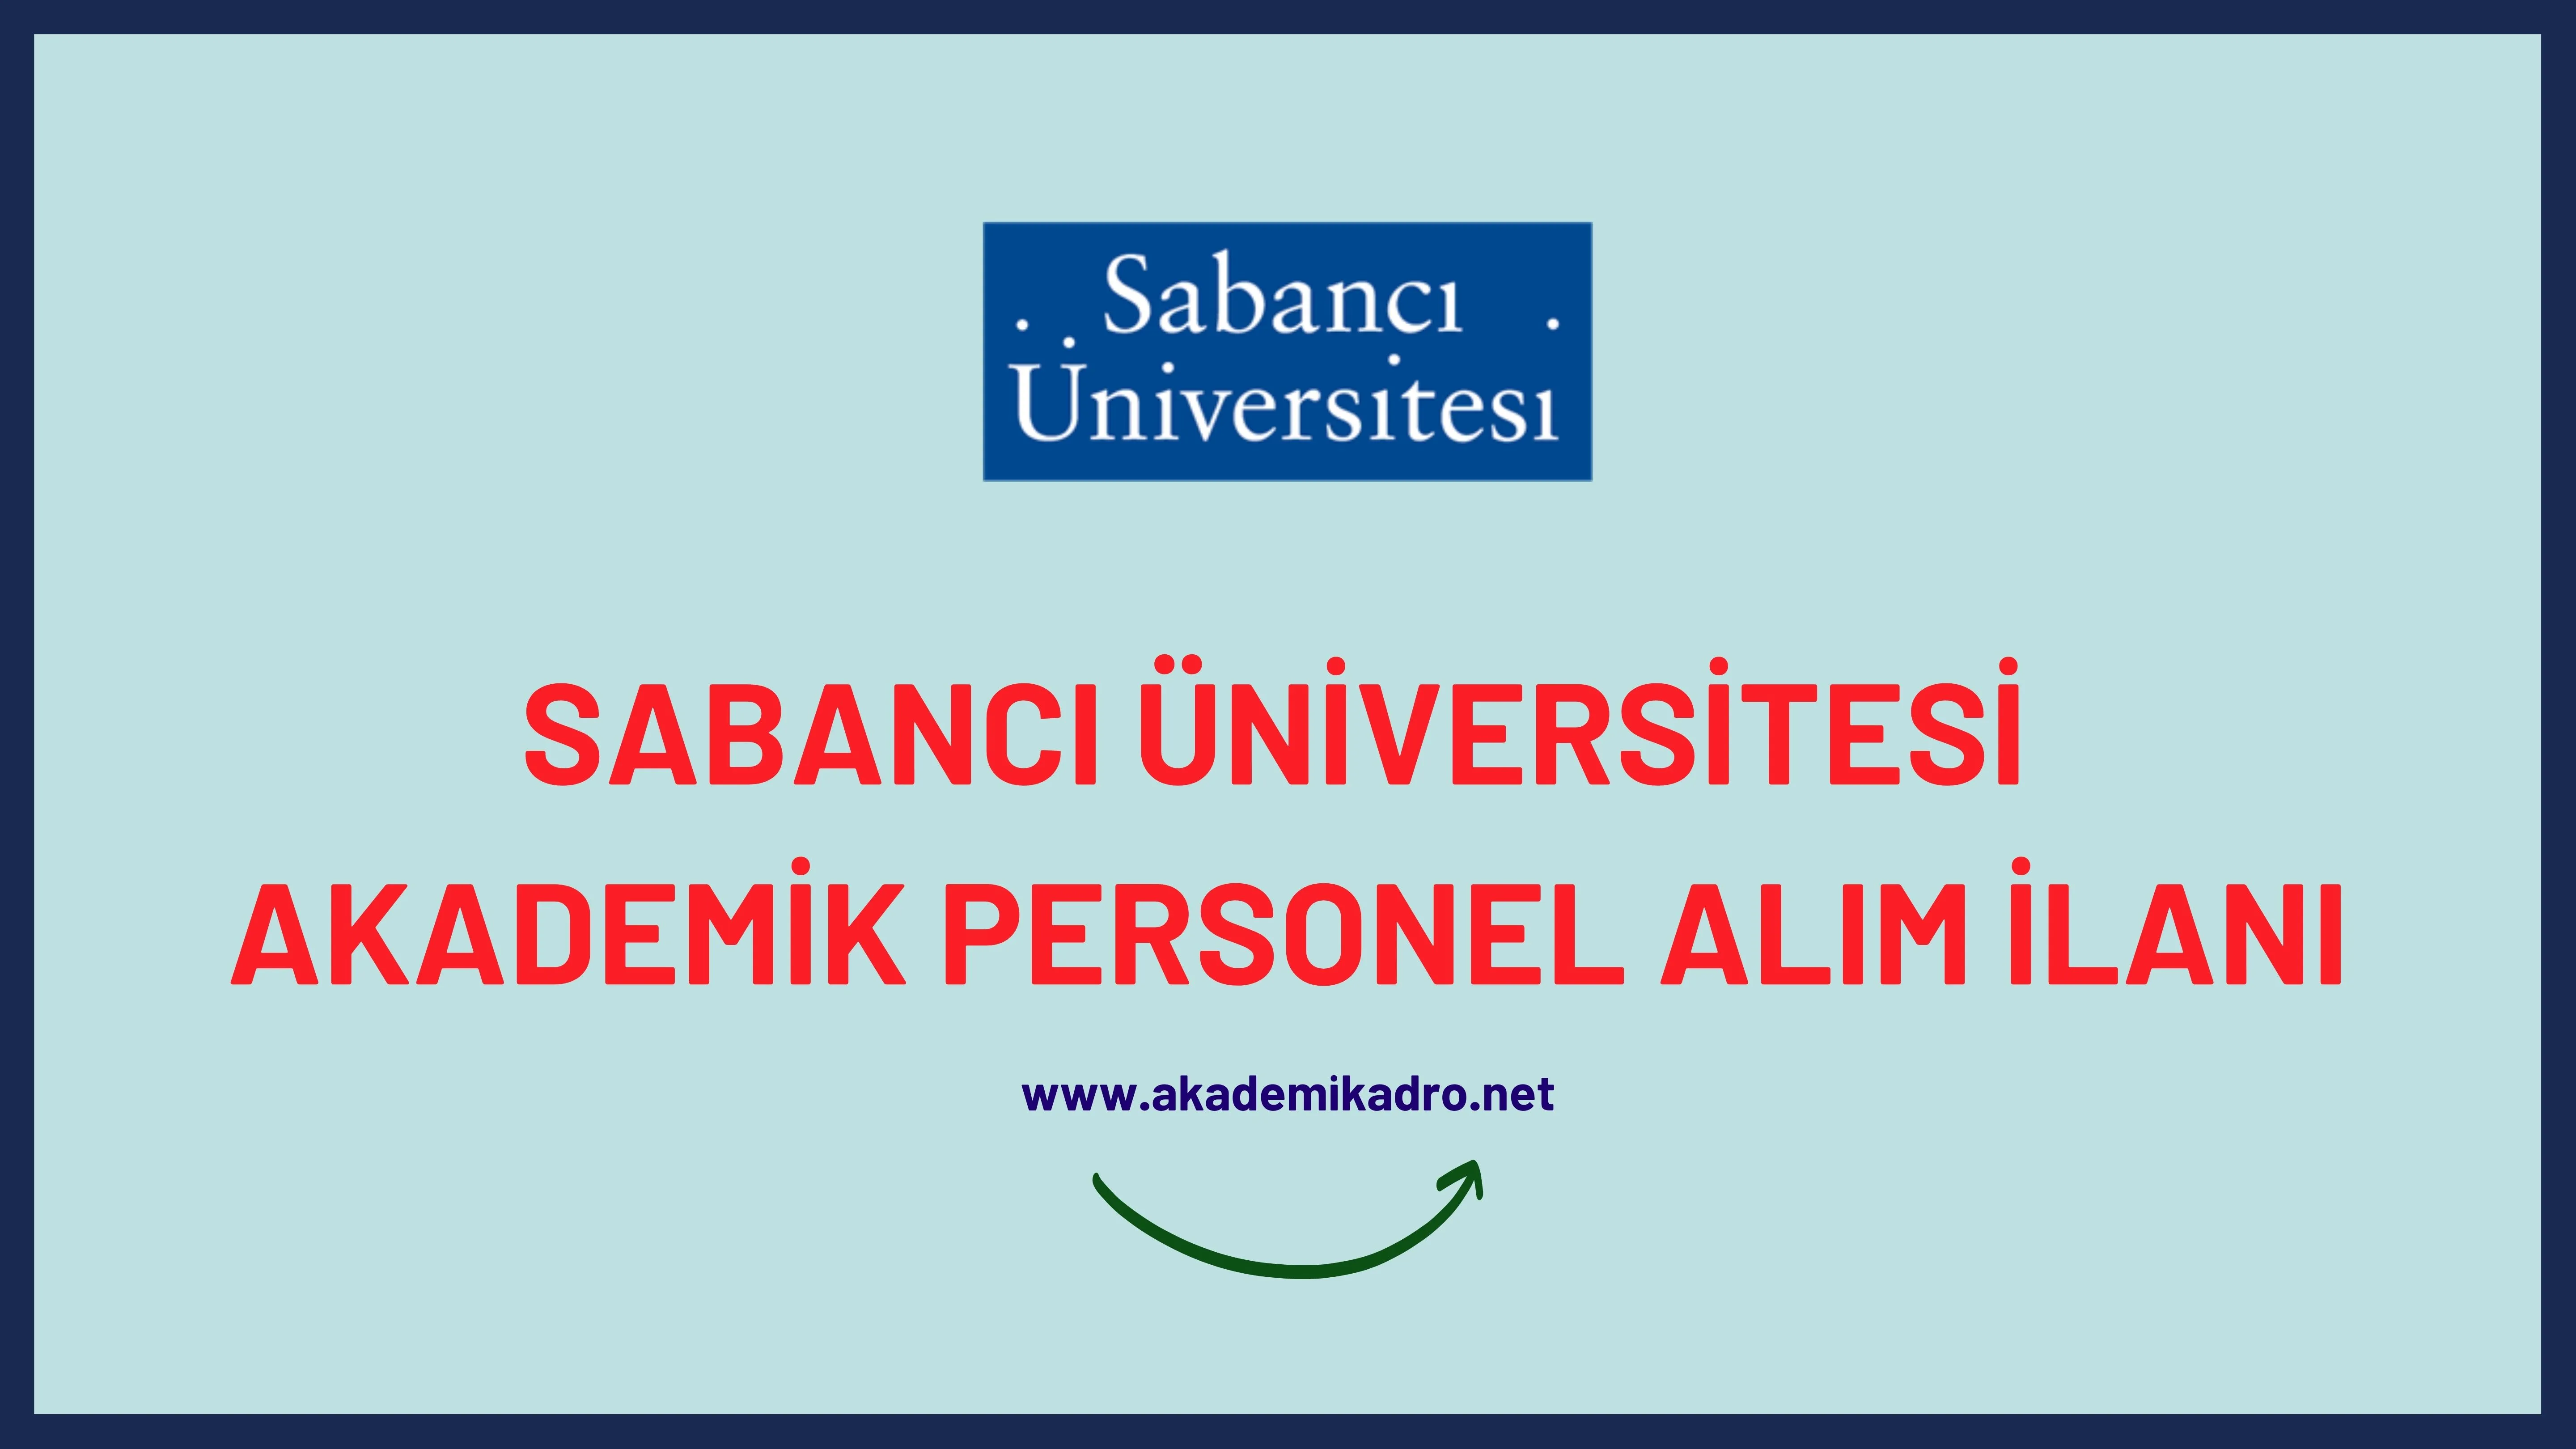 Sabancı Üniversitesi 8 akademik personel alacaktır